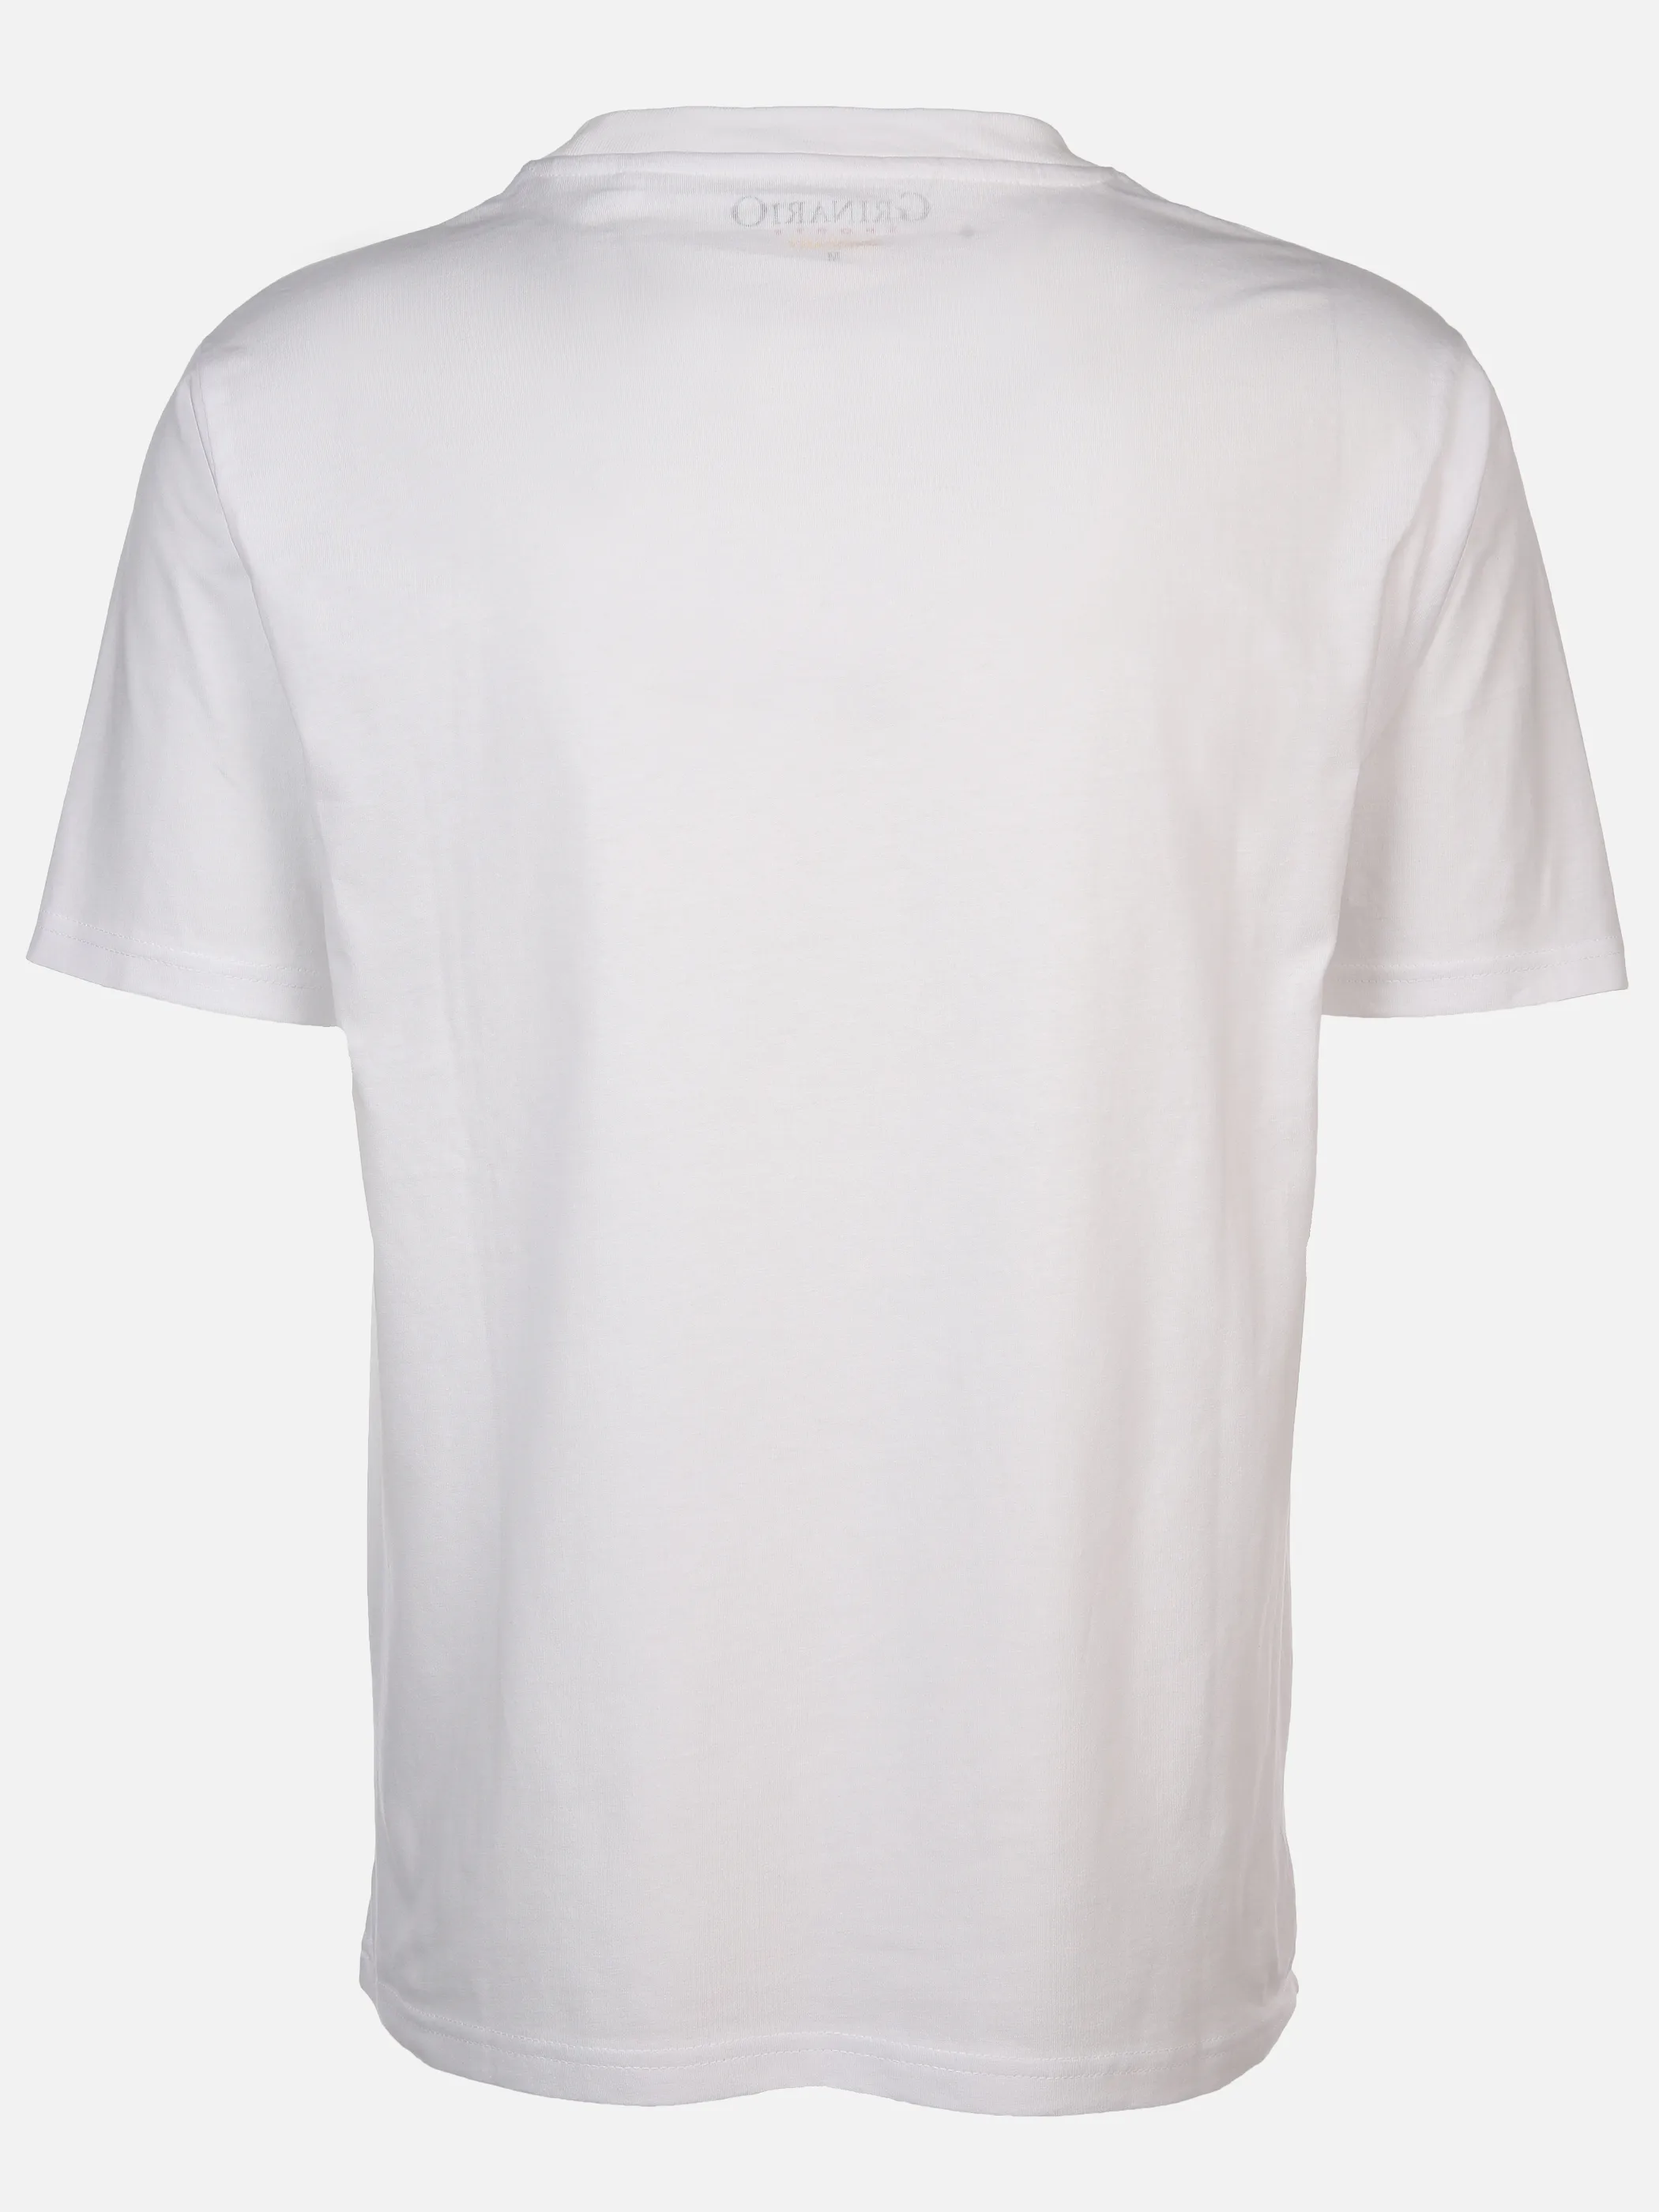 Grinario Sports Unisex T-Shirt EM24, Deutschland Weiß 889226 SP 2